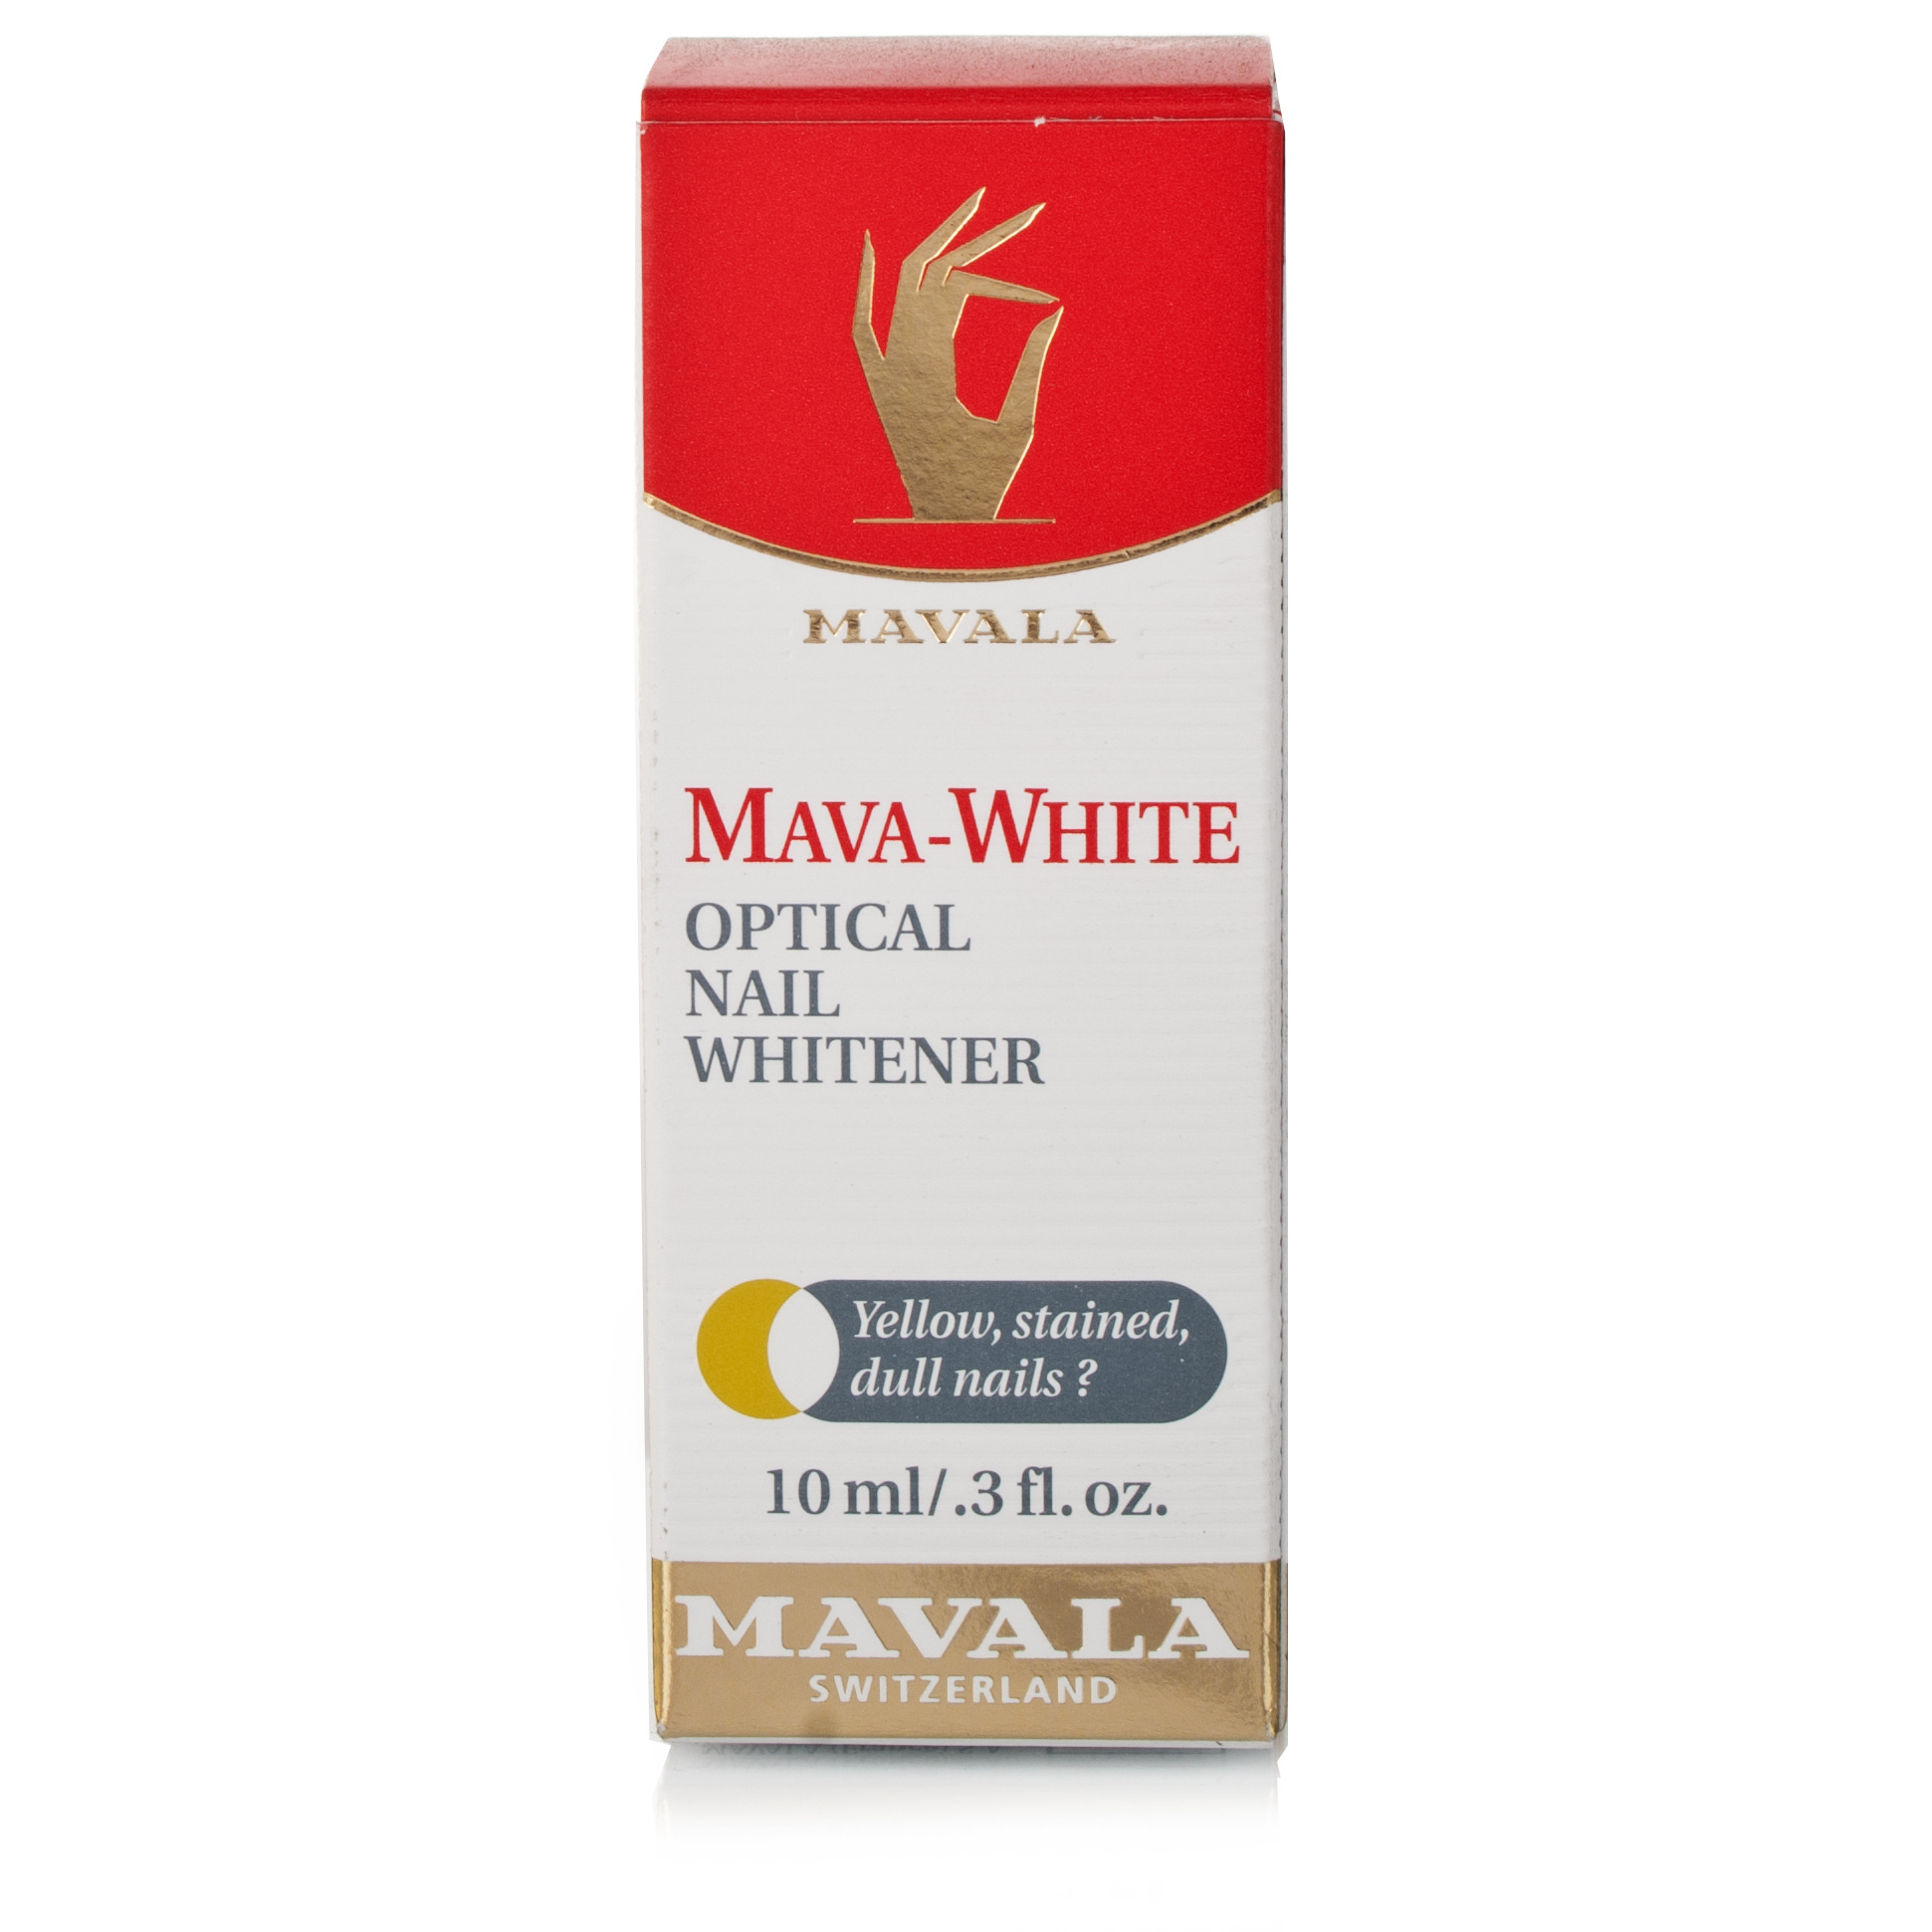 Mavala Mava-White Optical Nail Whitener - 10ml